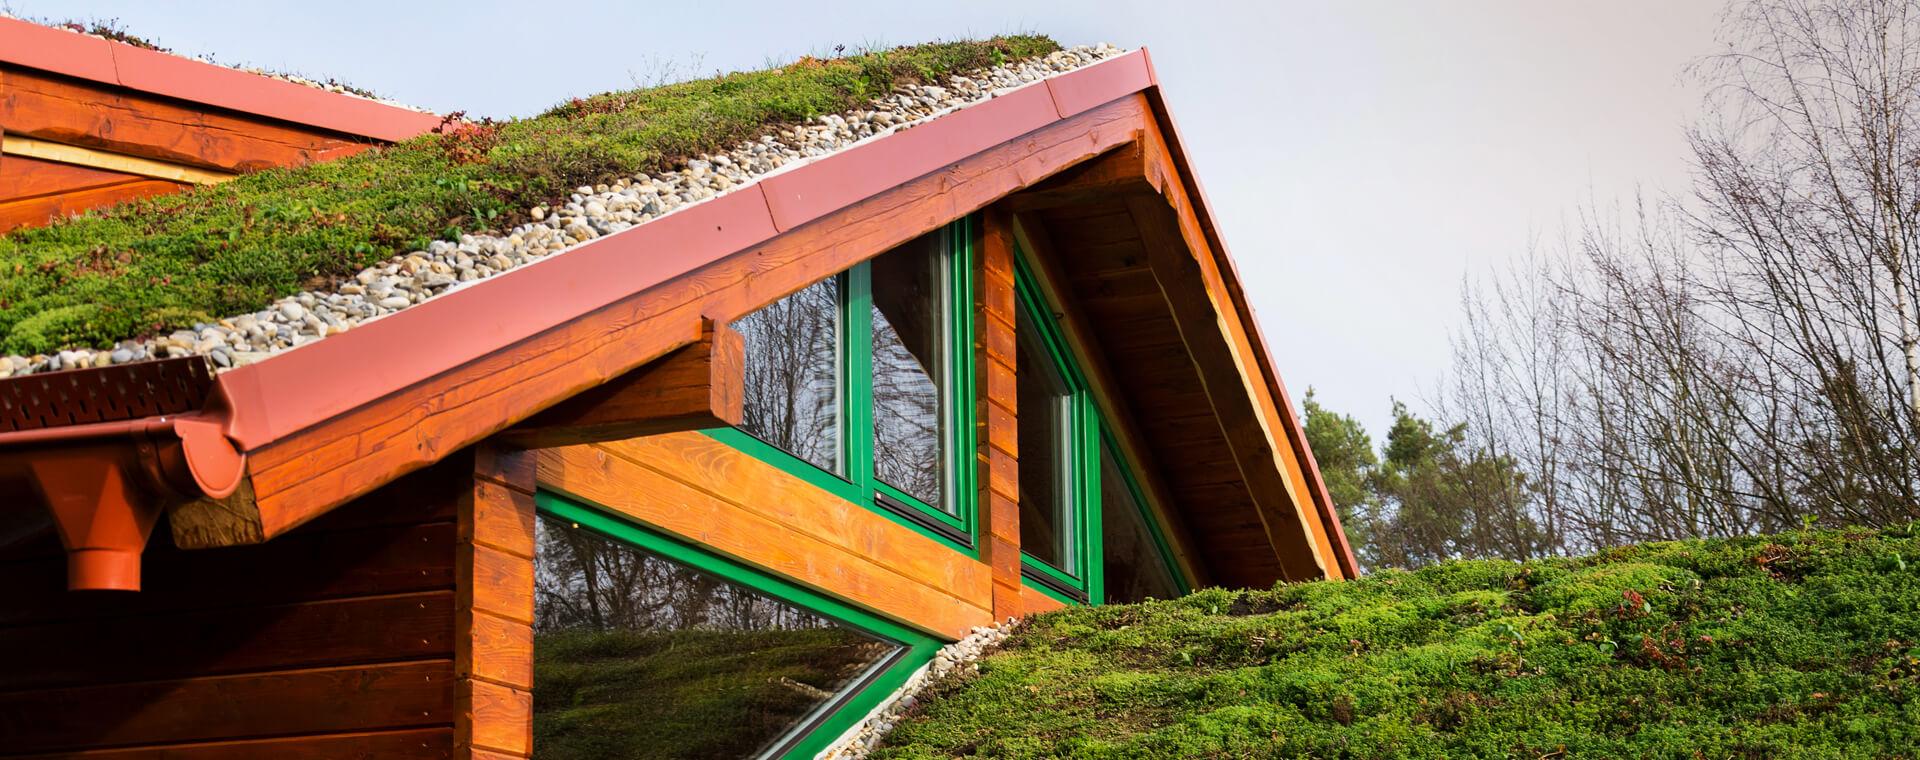 Zelená střecha: Co může nabídnout a jaká je její skladba?